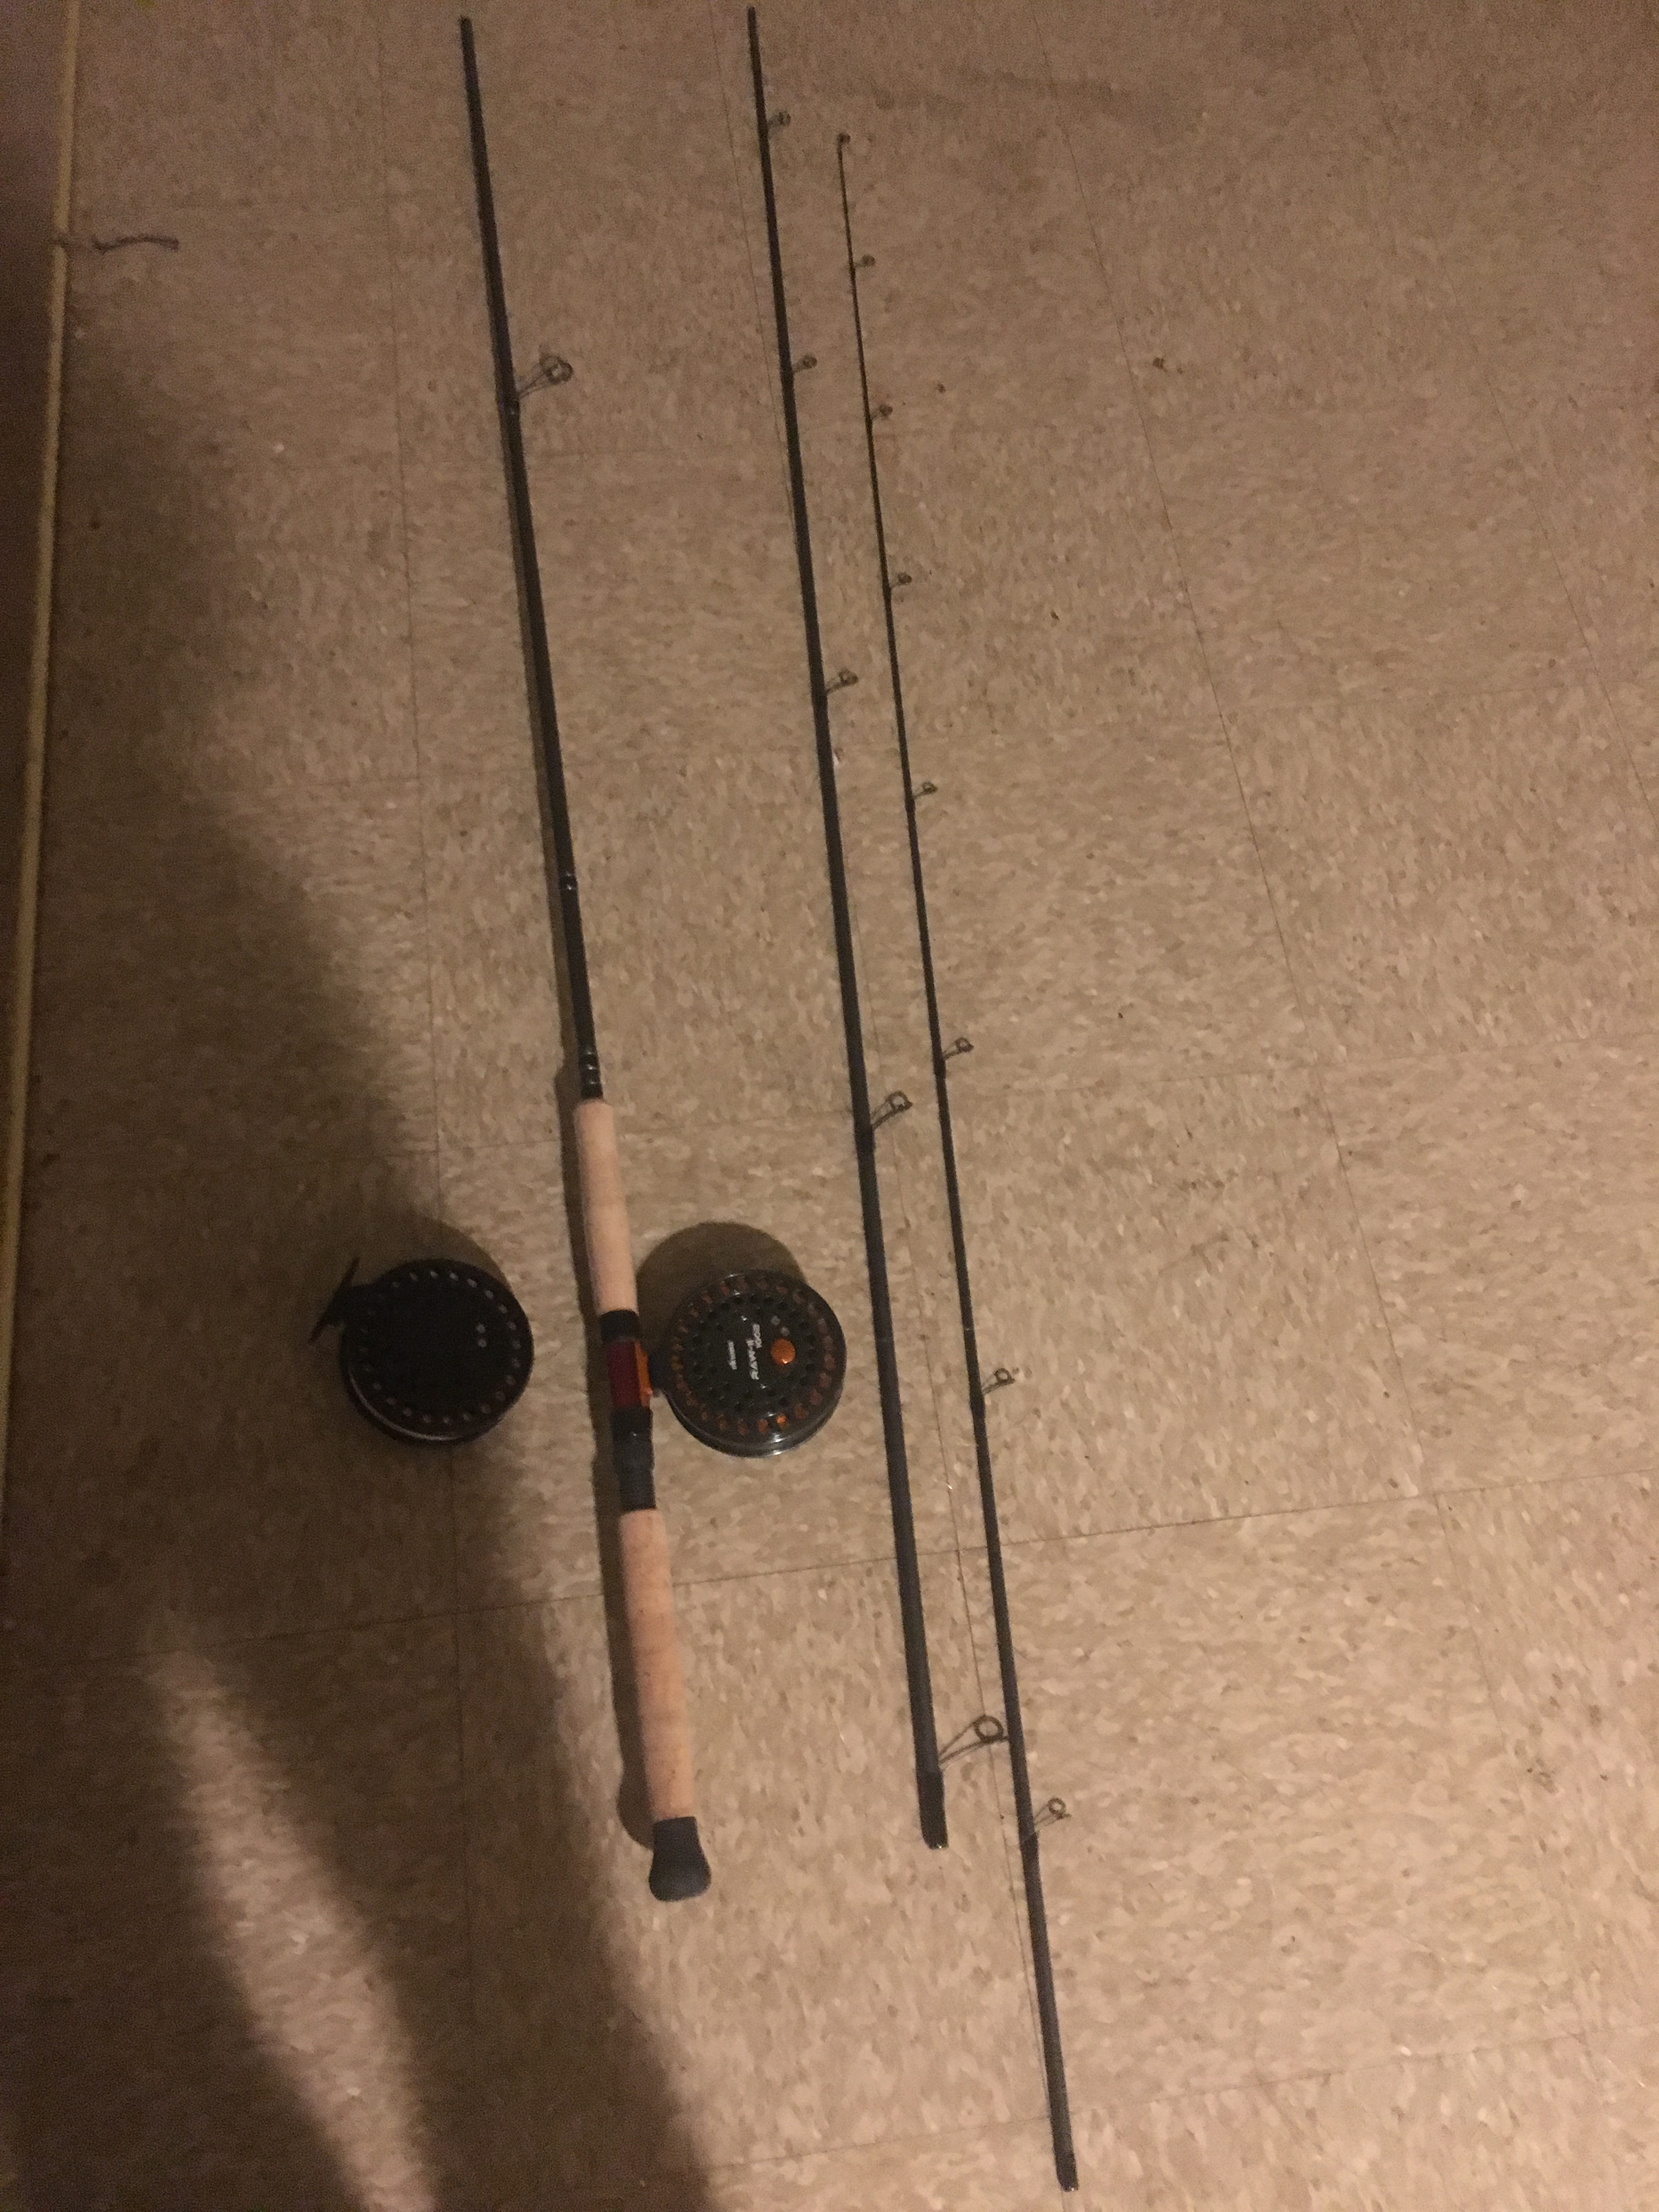 Okuma Aventa 15'6 float rod with okuma raw 2 reel and a Sheffield